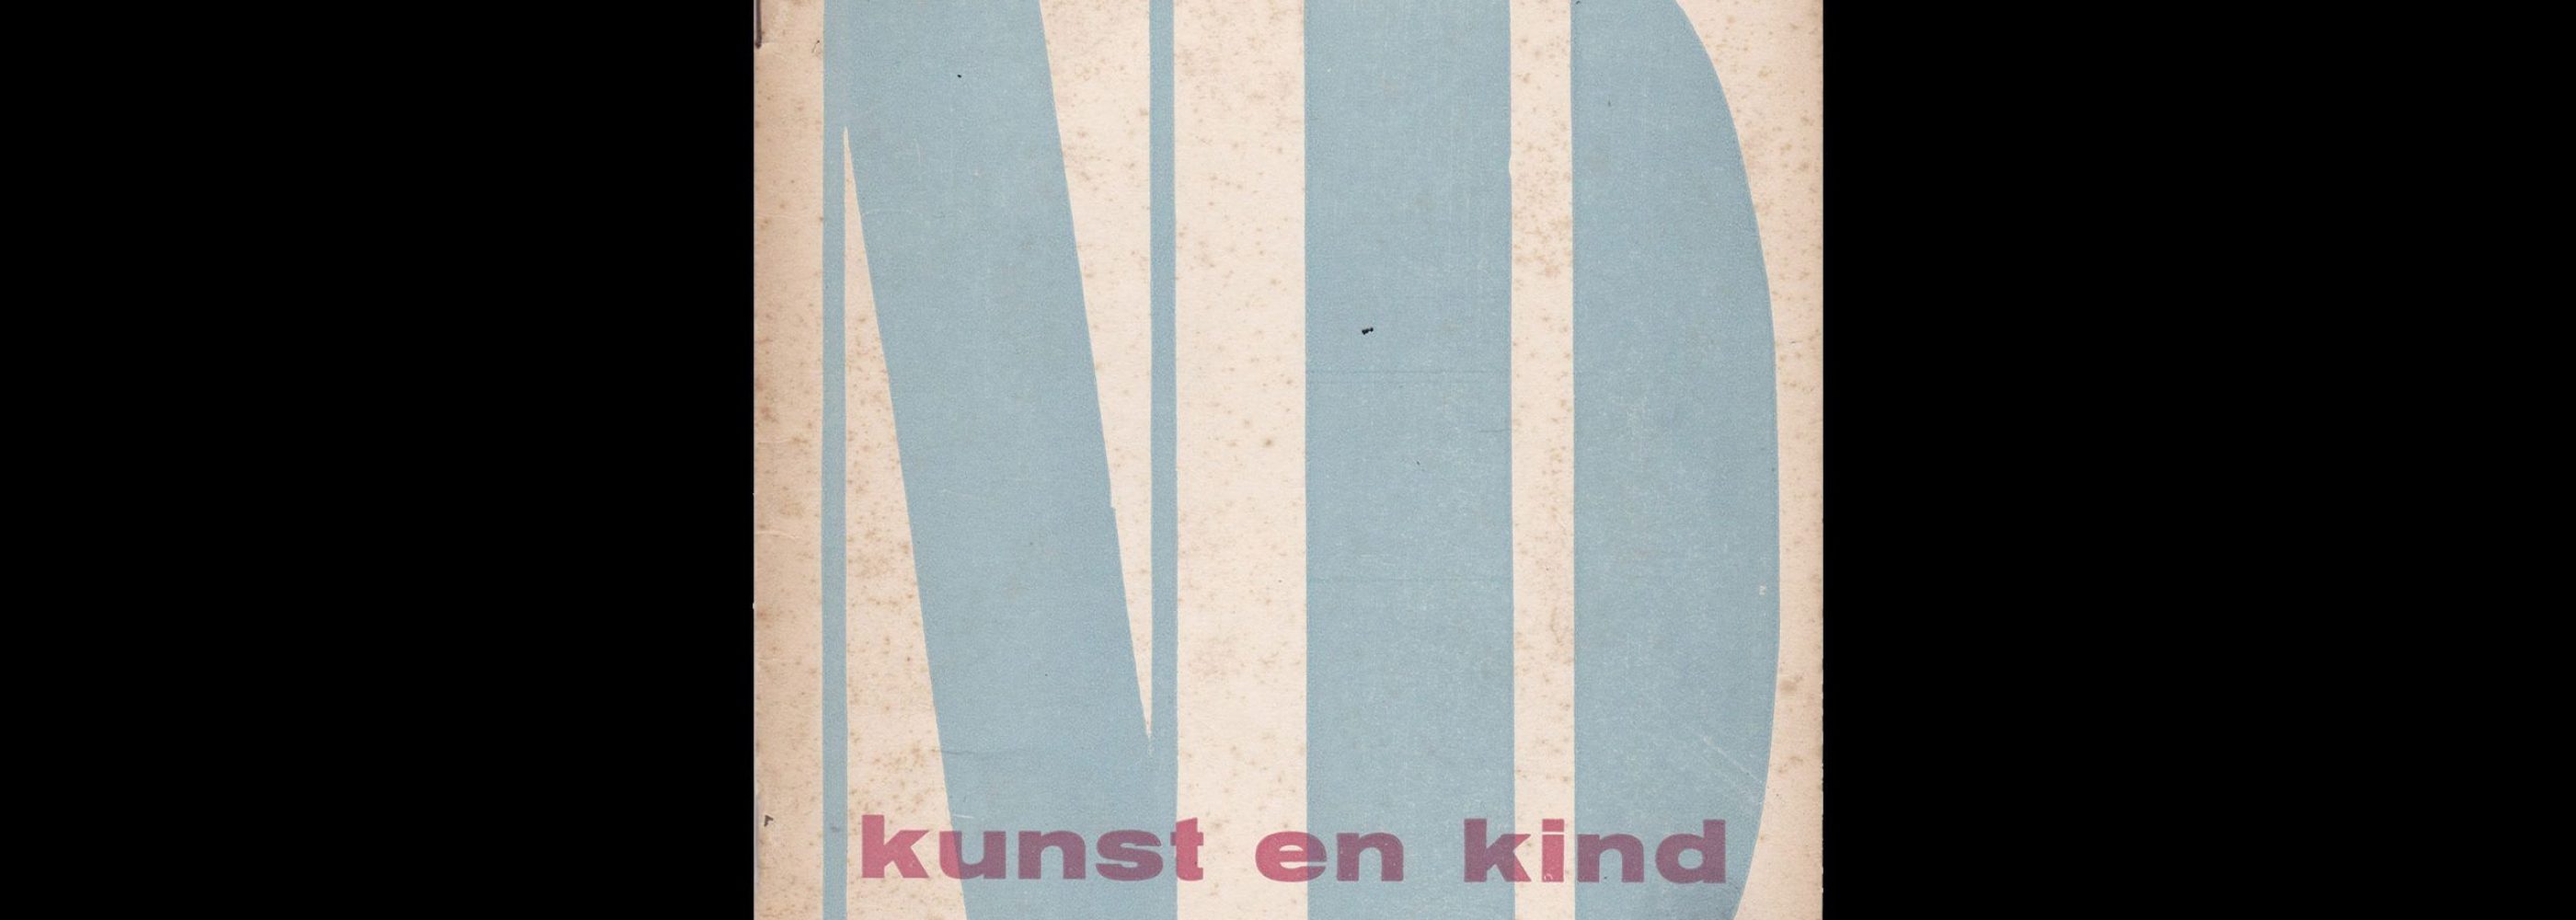 Kunst en Kind Stedelijk Museum Amsterdam, 1949 designed by Willem Sandberg